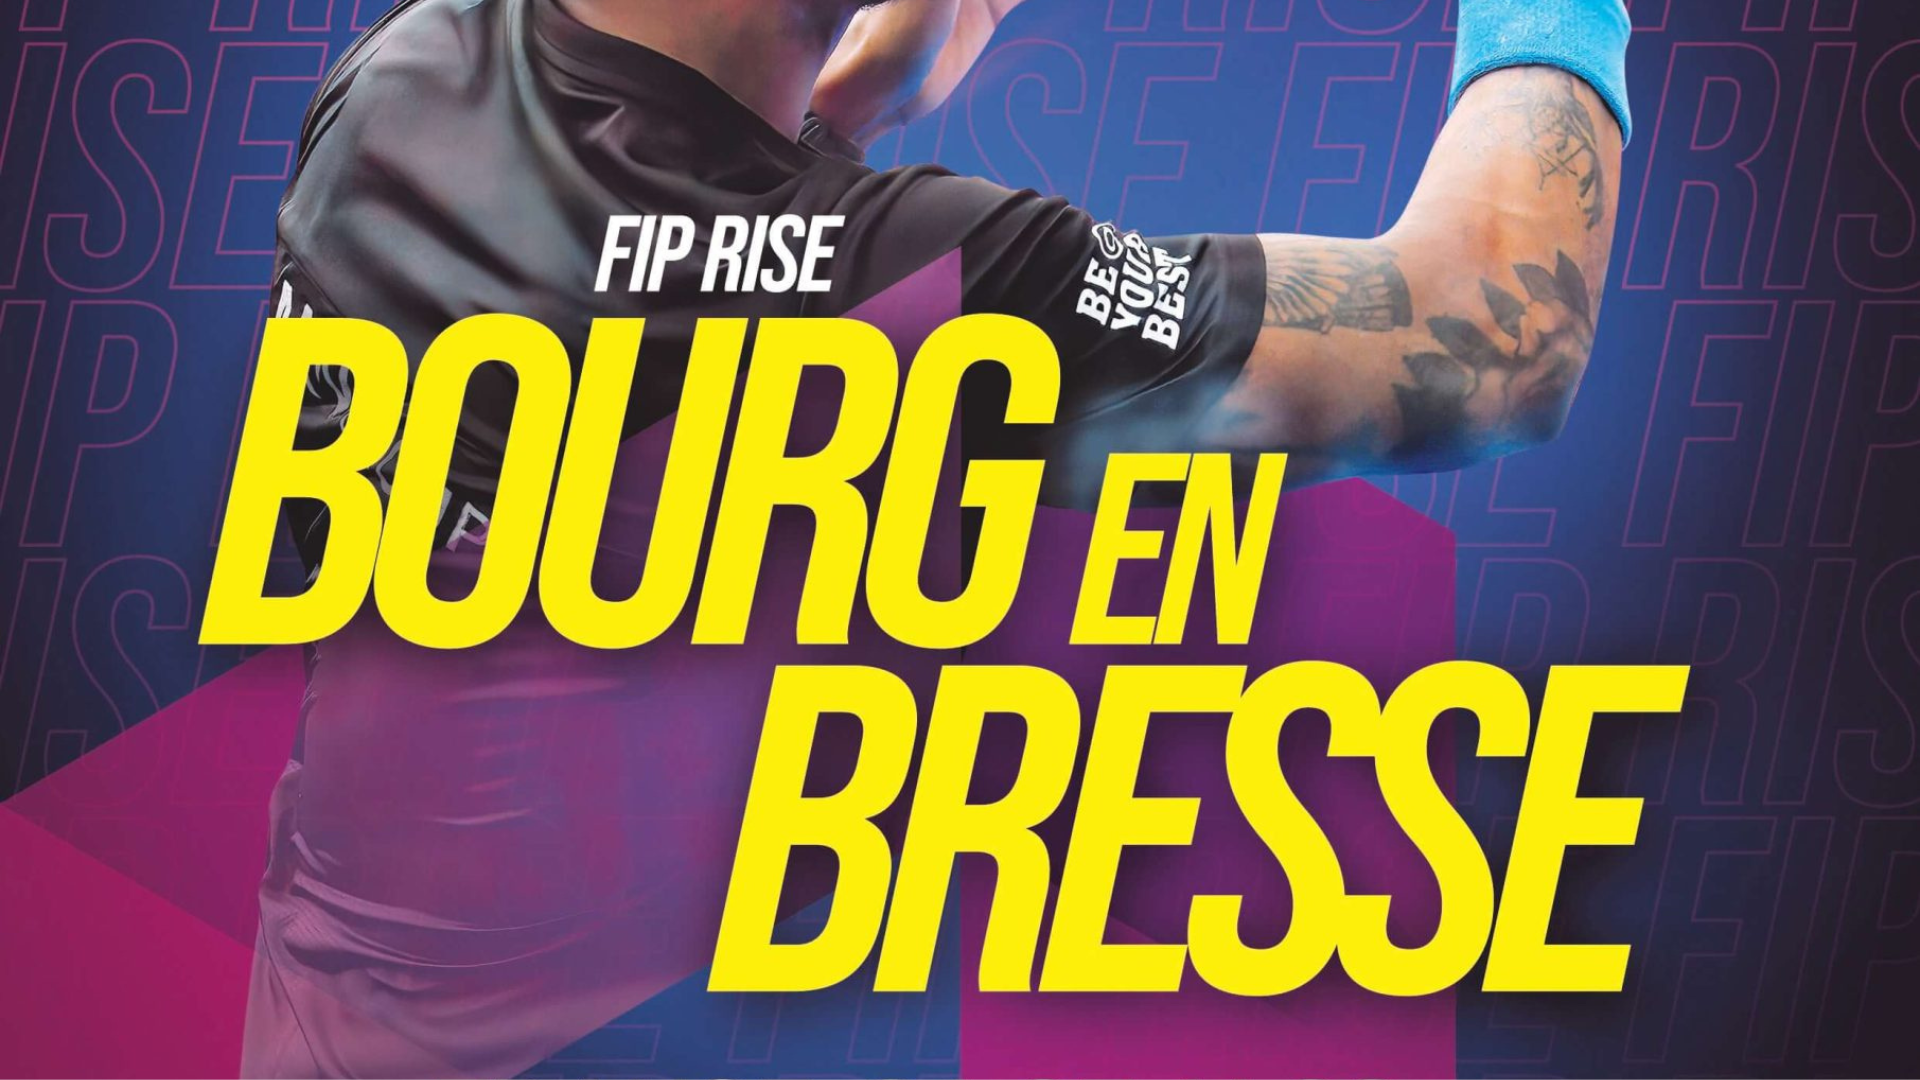 FIP Bourg en Bresse geeft 16 9 weer